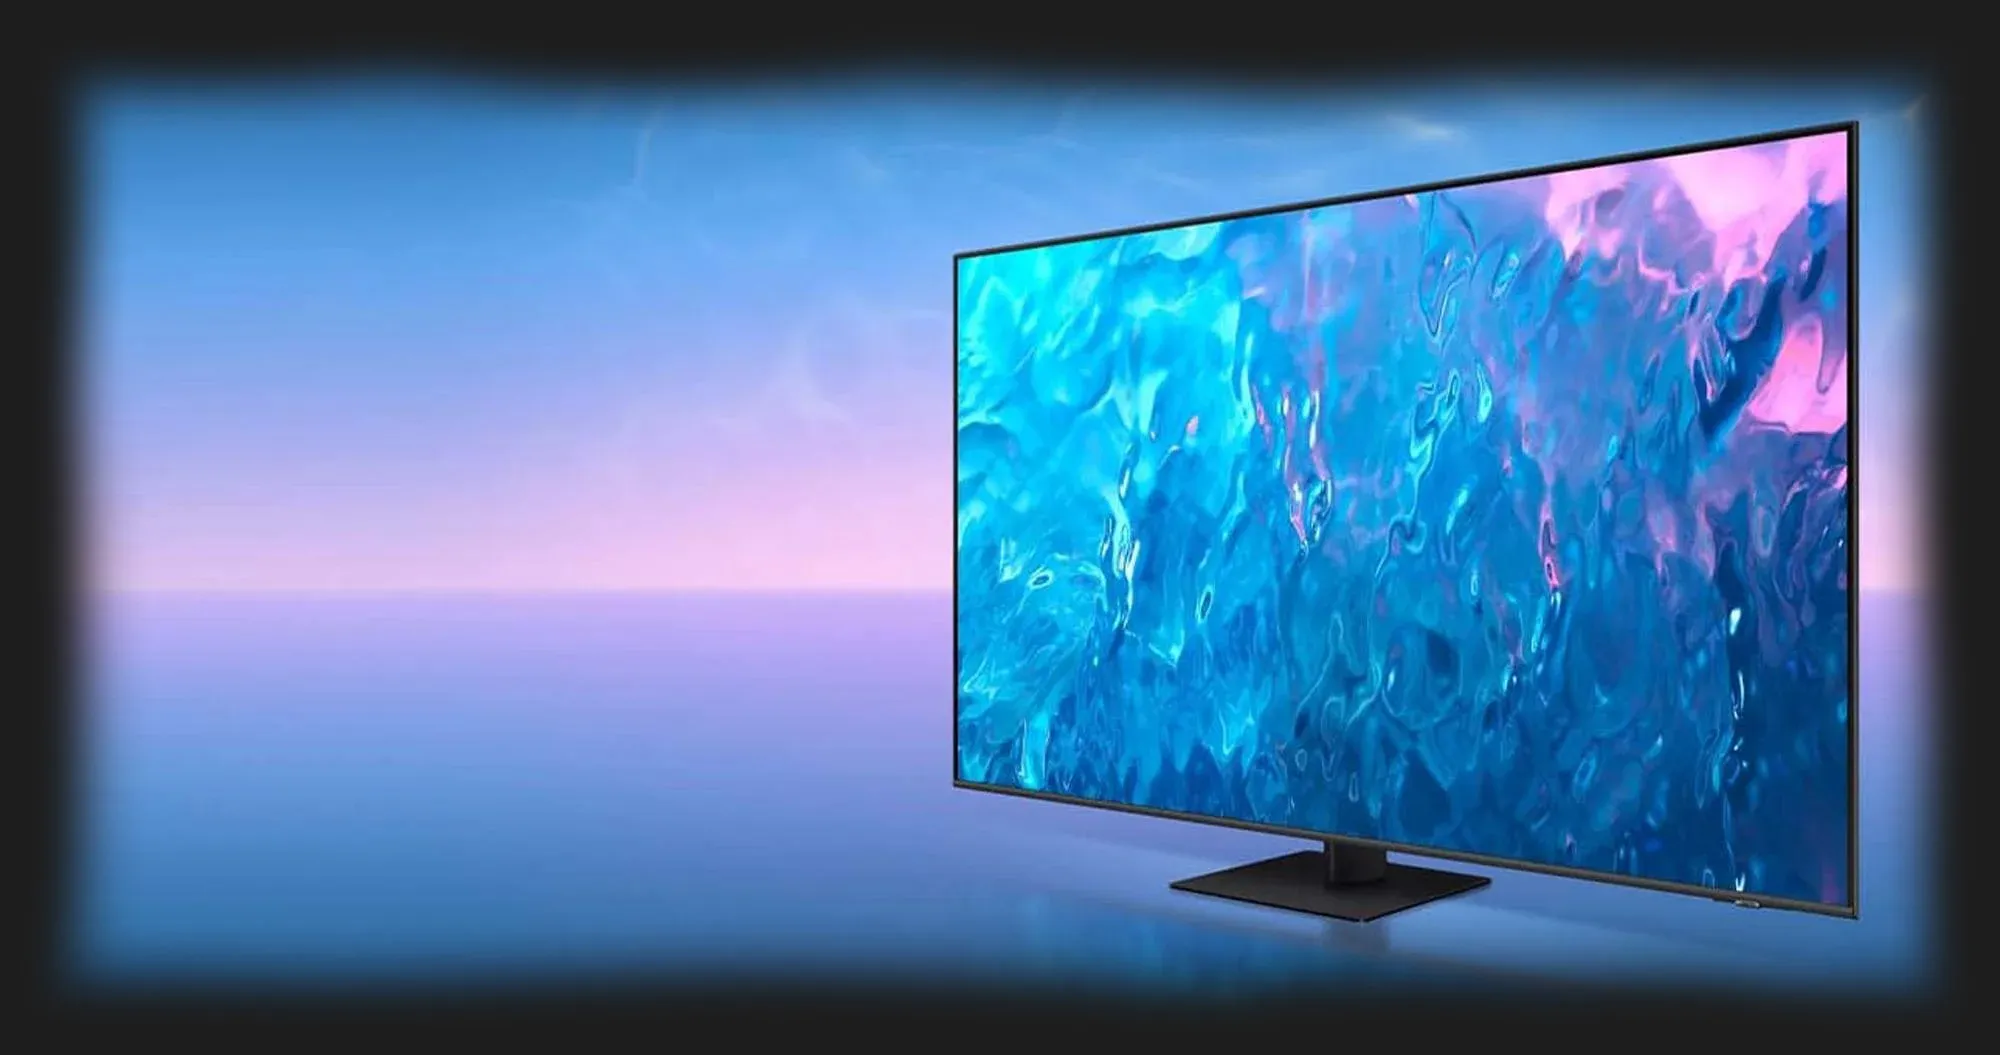 Телевизор Samsung 55 QE55Q70C (EU)